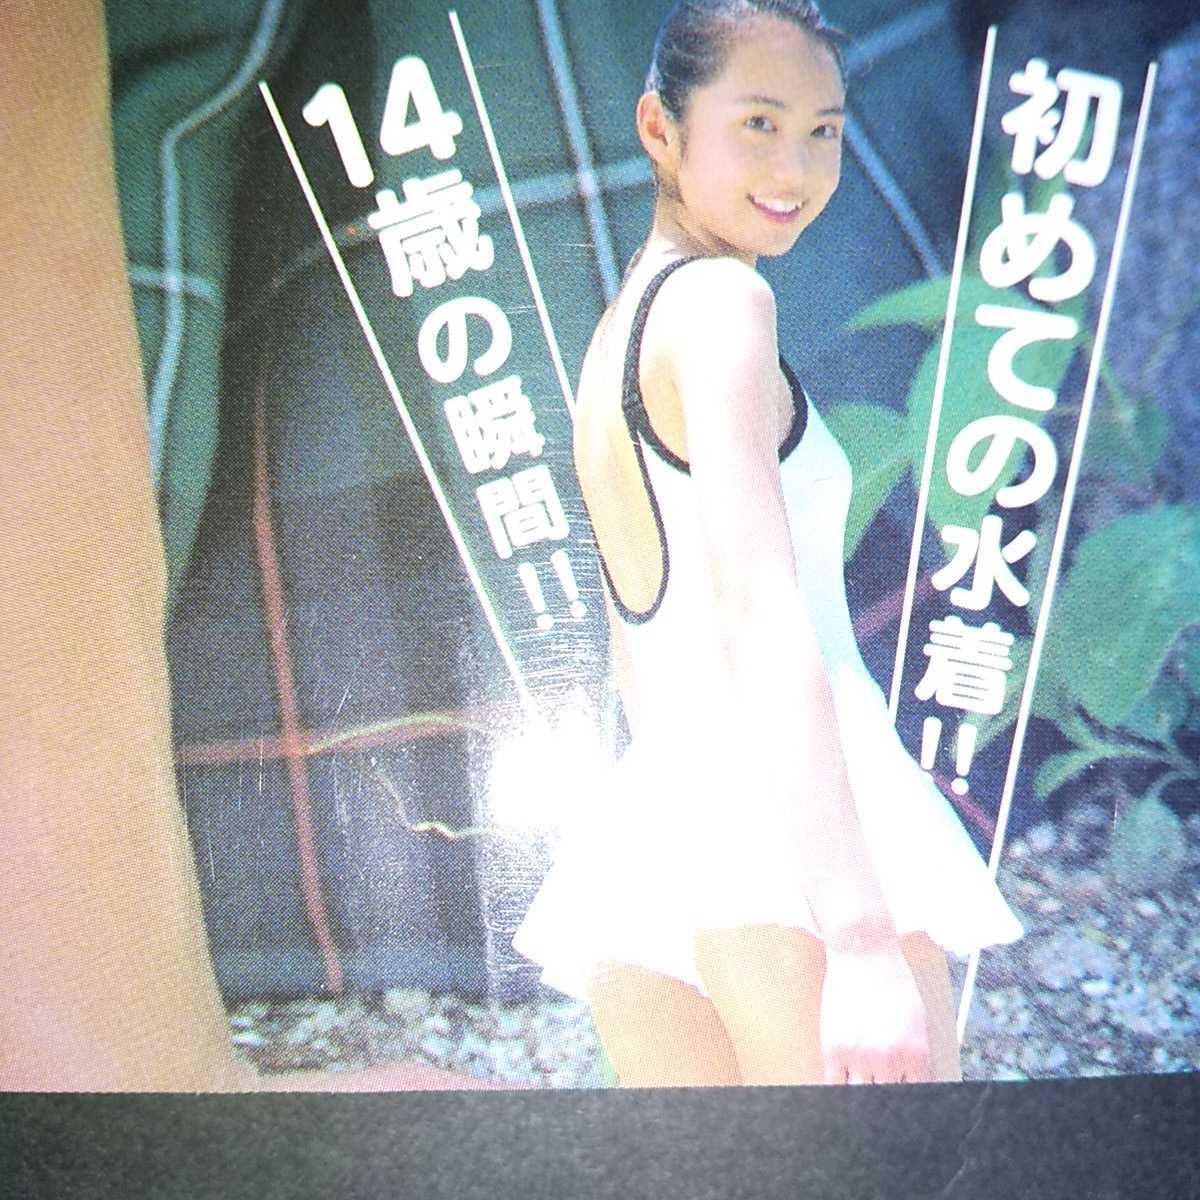 鉢嶺杏奈 写真集 「トレビあん」第一版・帯つき 2004年発売 2